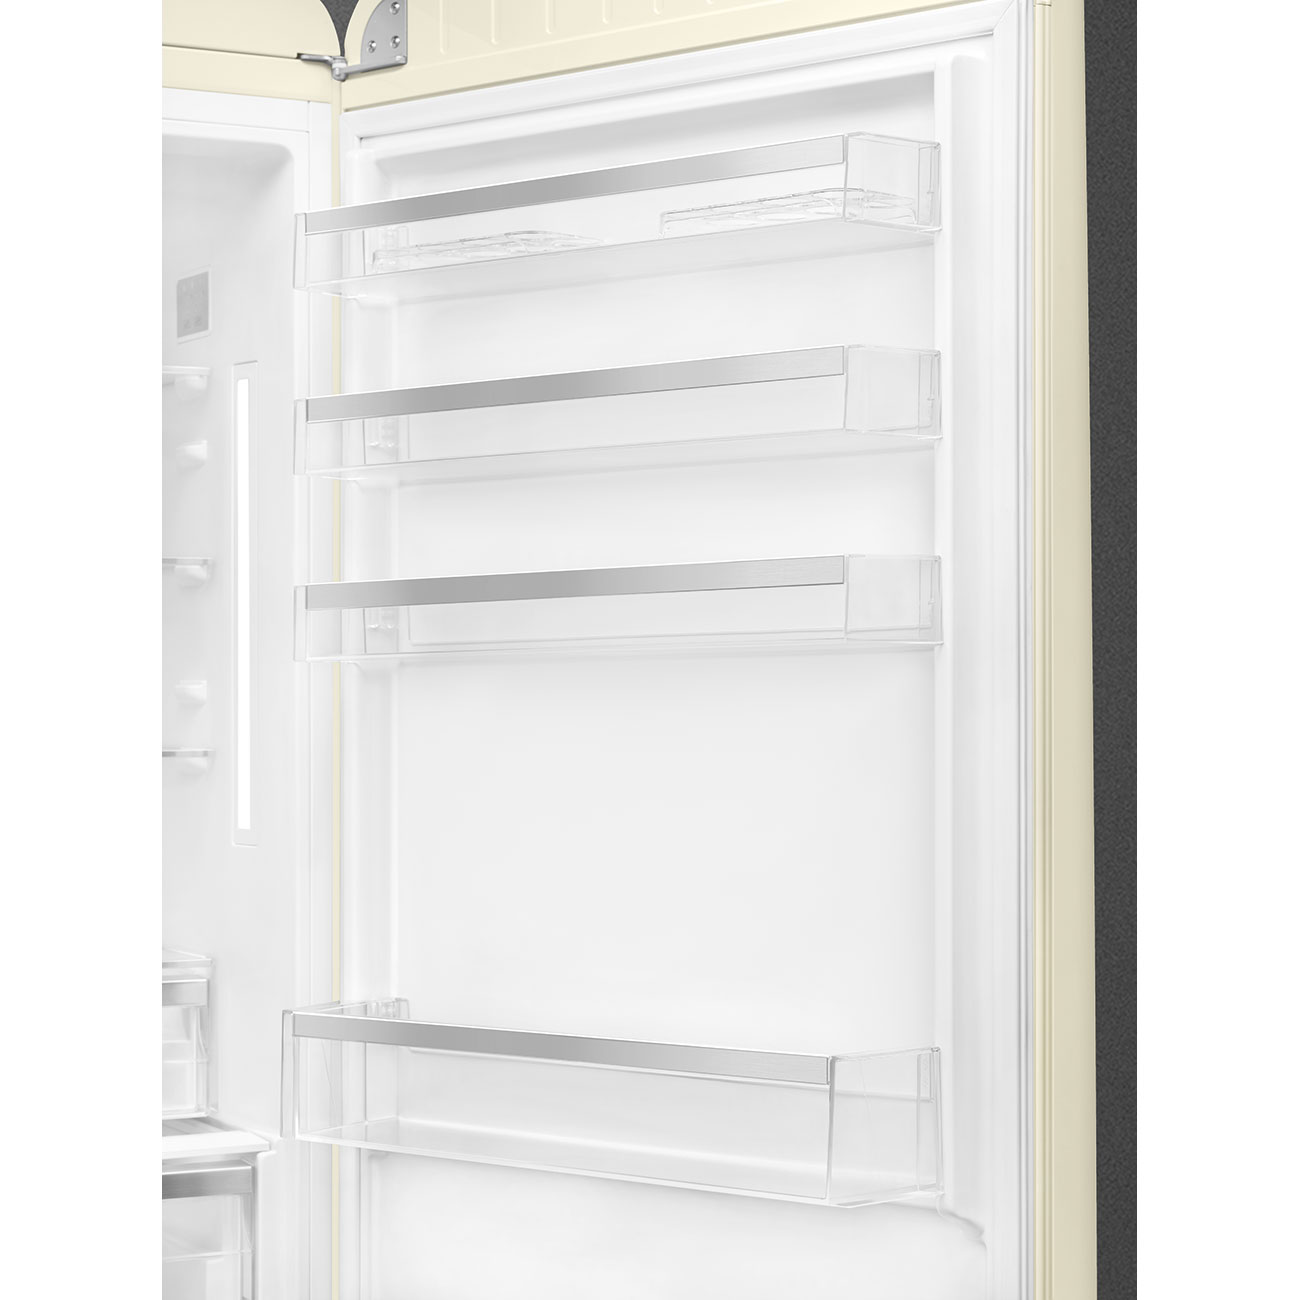 Creme Retro-Kühlschränke von Smeg_8